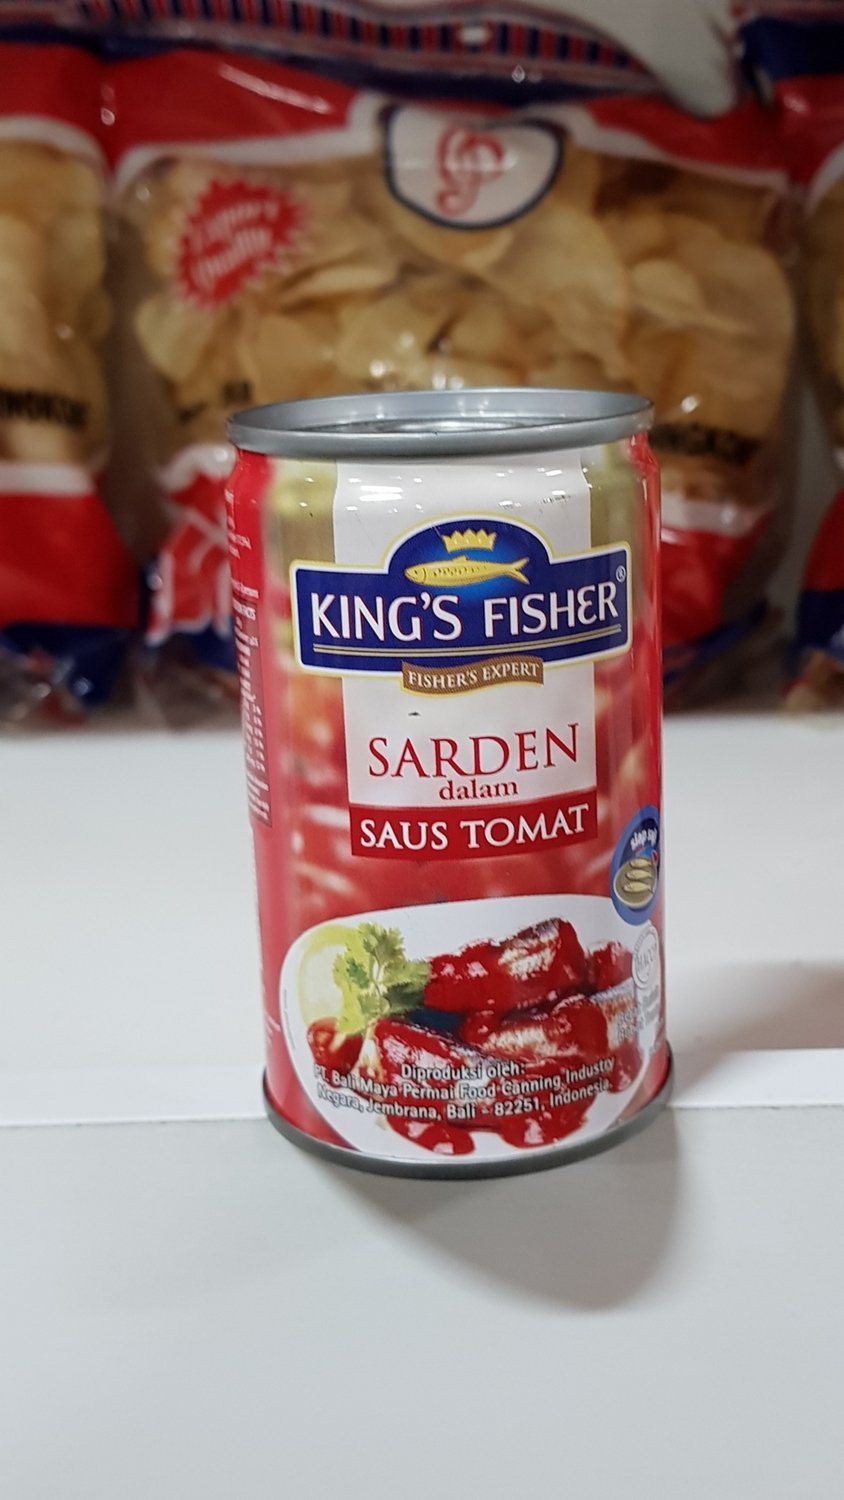 KINGs FISHER SARDEN SAUS TOMAT